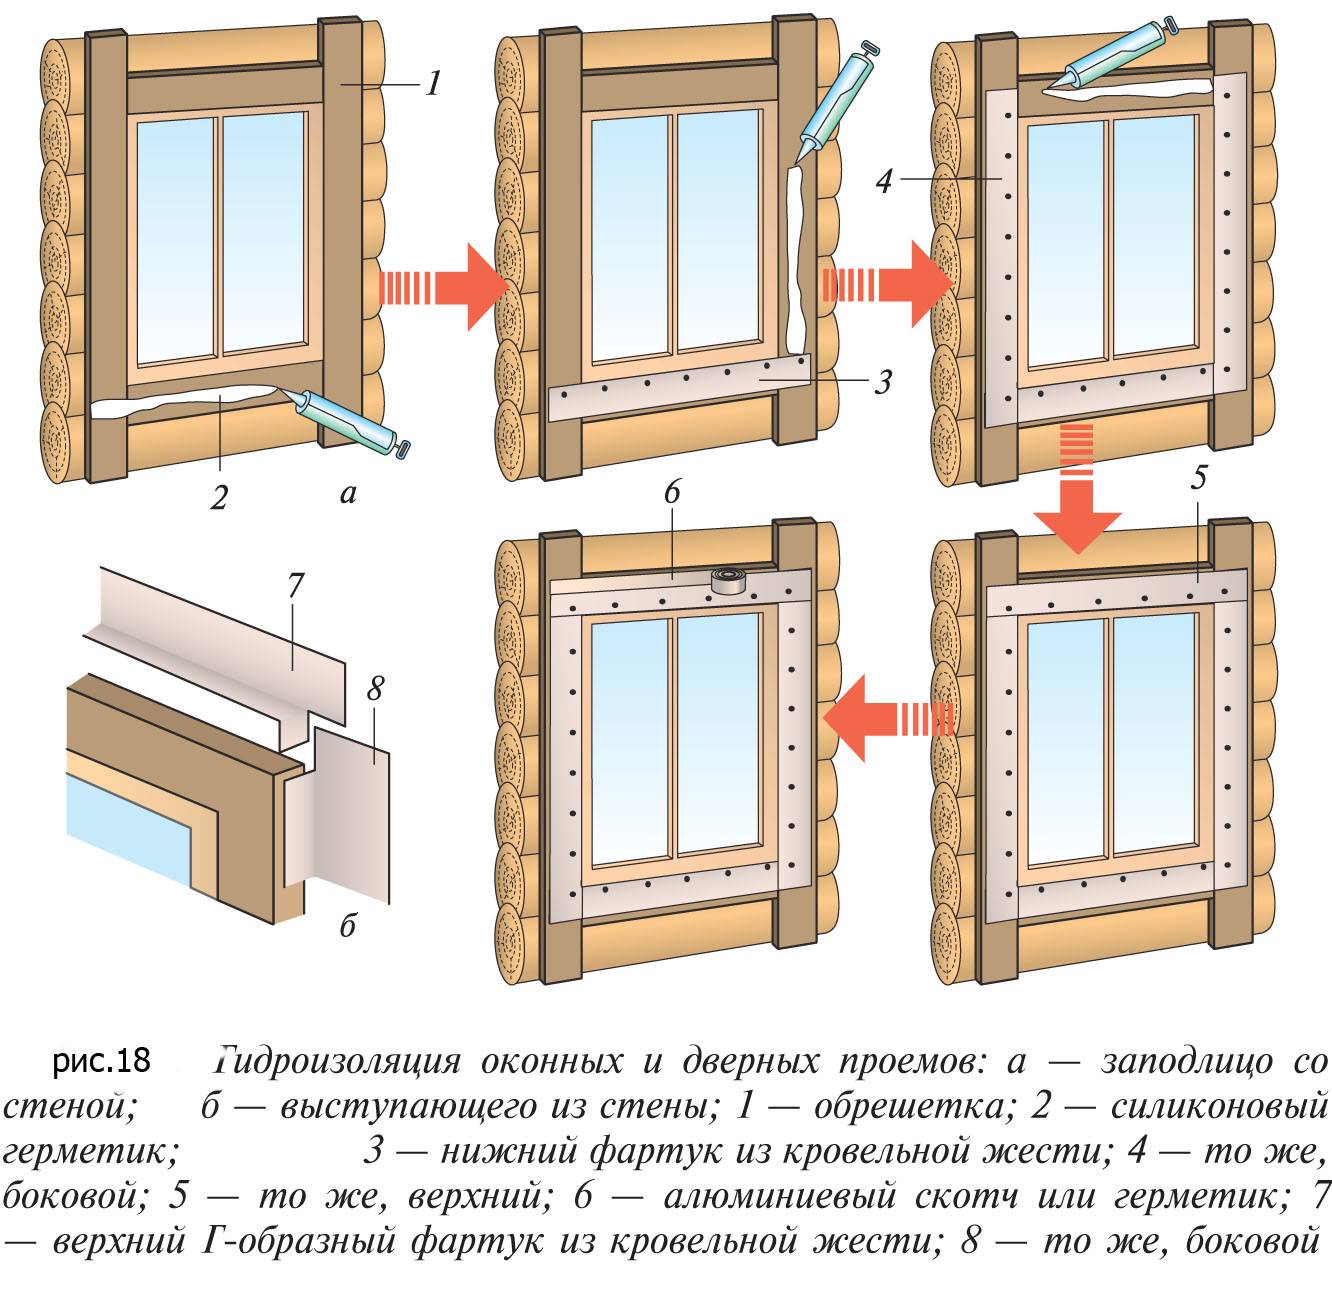 Как установить деревянные окна в деревянном доме правильно - видео